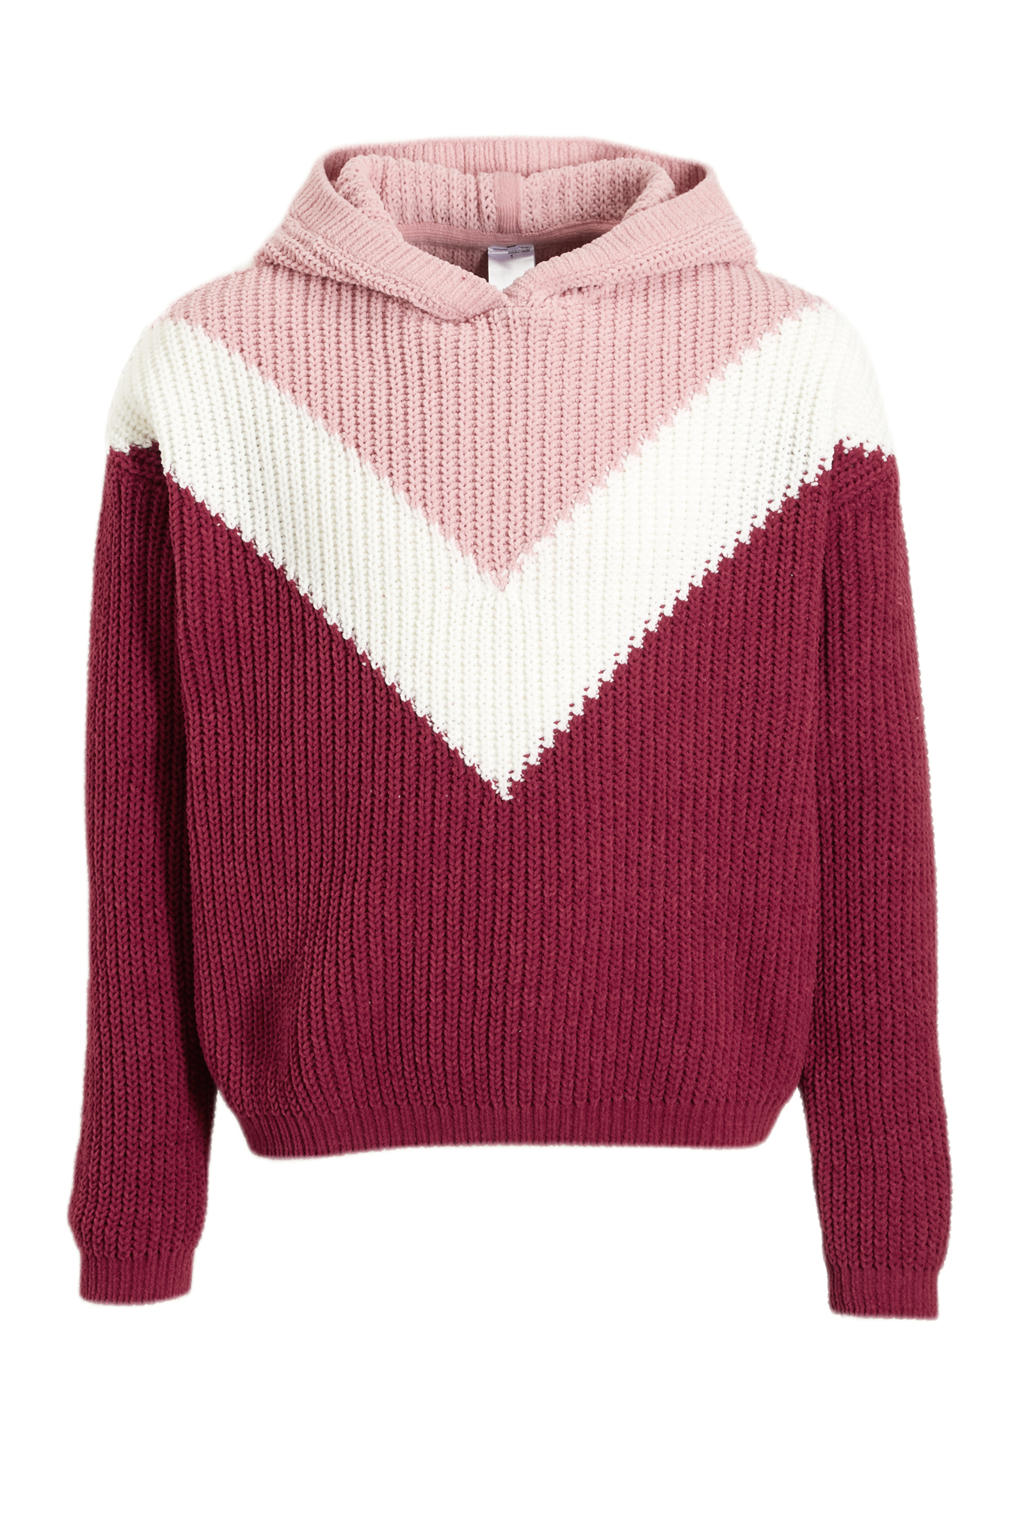 Donkerrood, wit en roze meisjes C&A Here & There grofgebreide trui van polyester met meerkleurige print, lange mouwen en capuchon